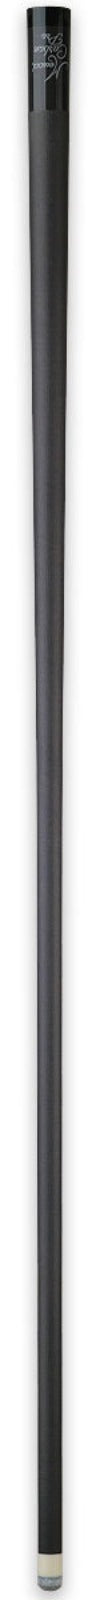 Meucci Carbon Fiber Pro Shaft - 12.25mm -Meucci